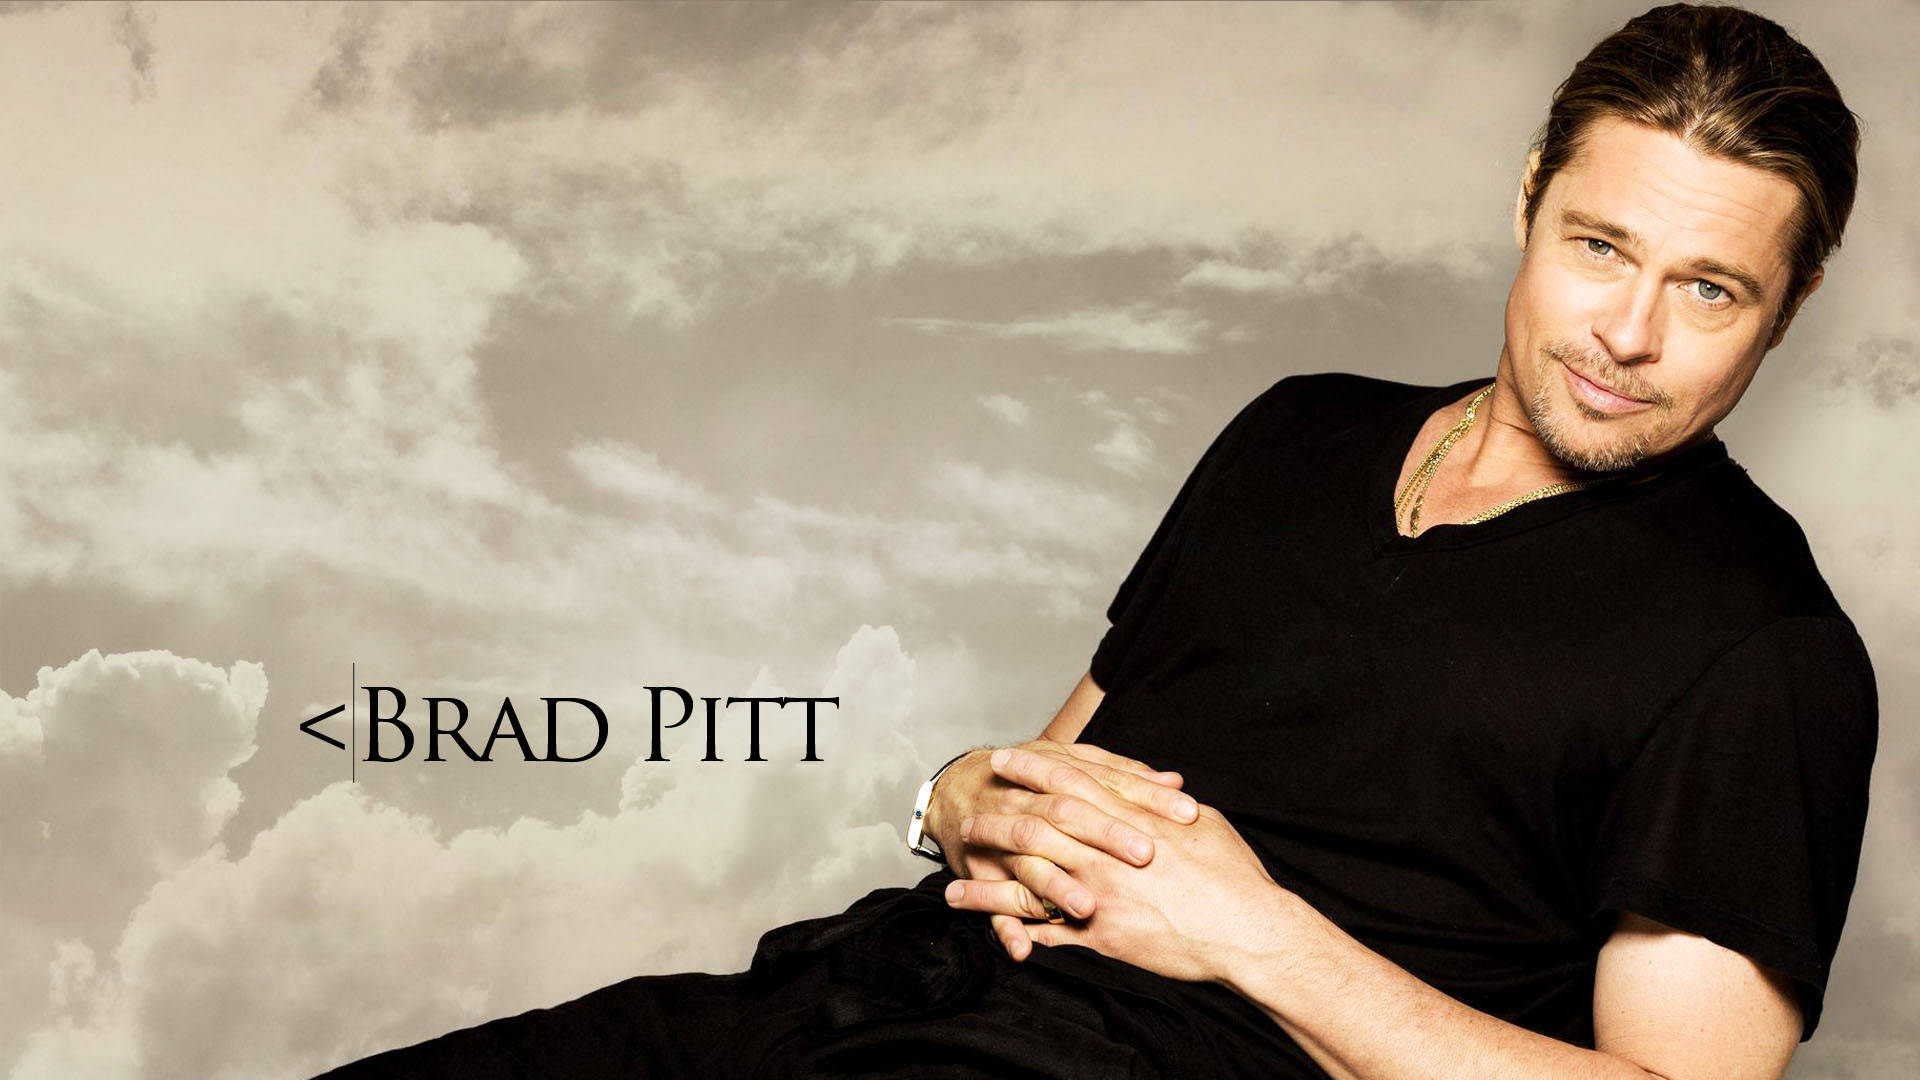 Brad Pitt On Clouds